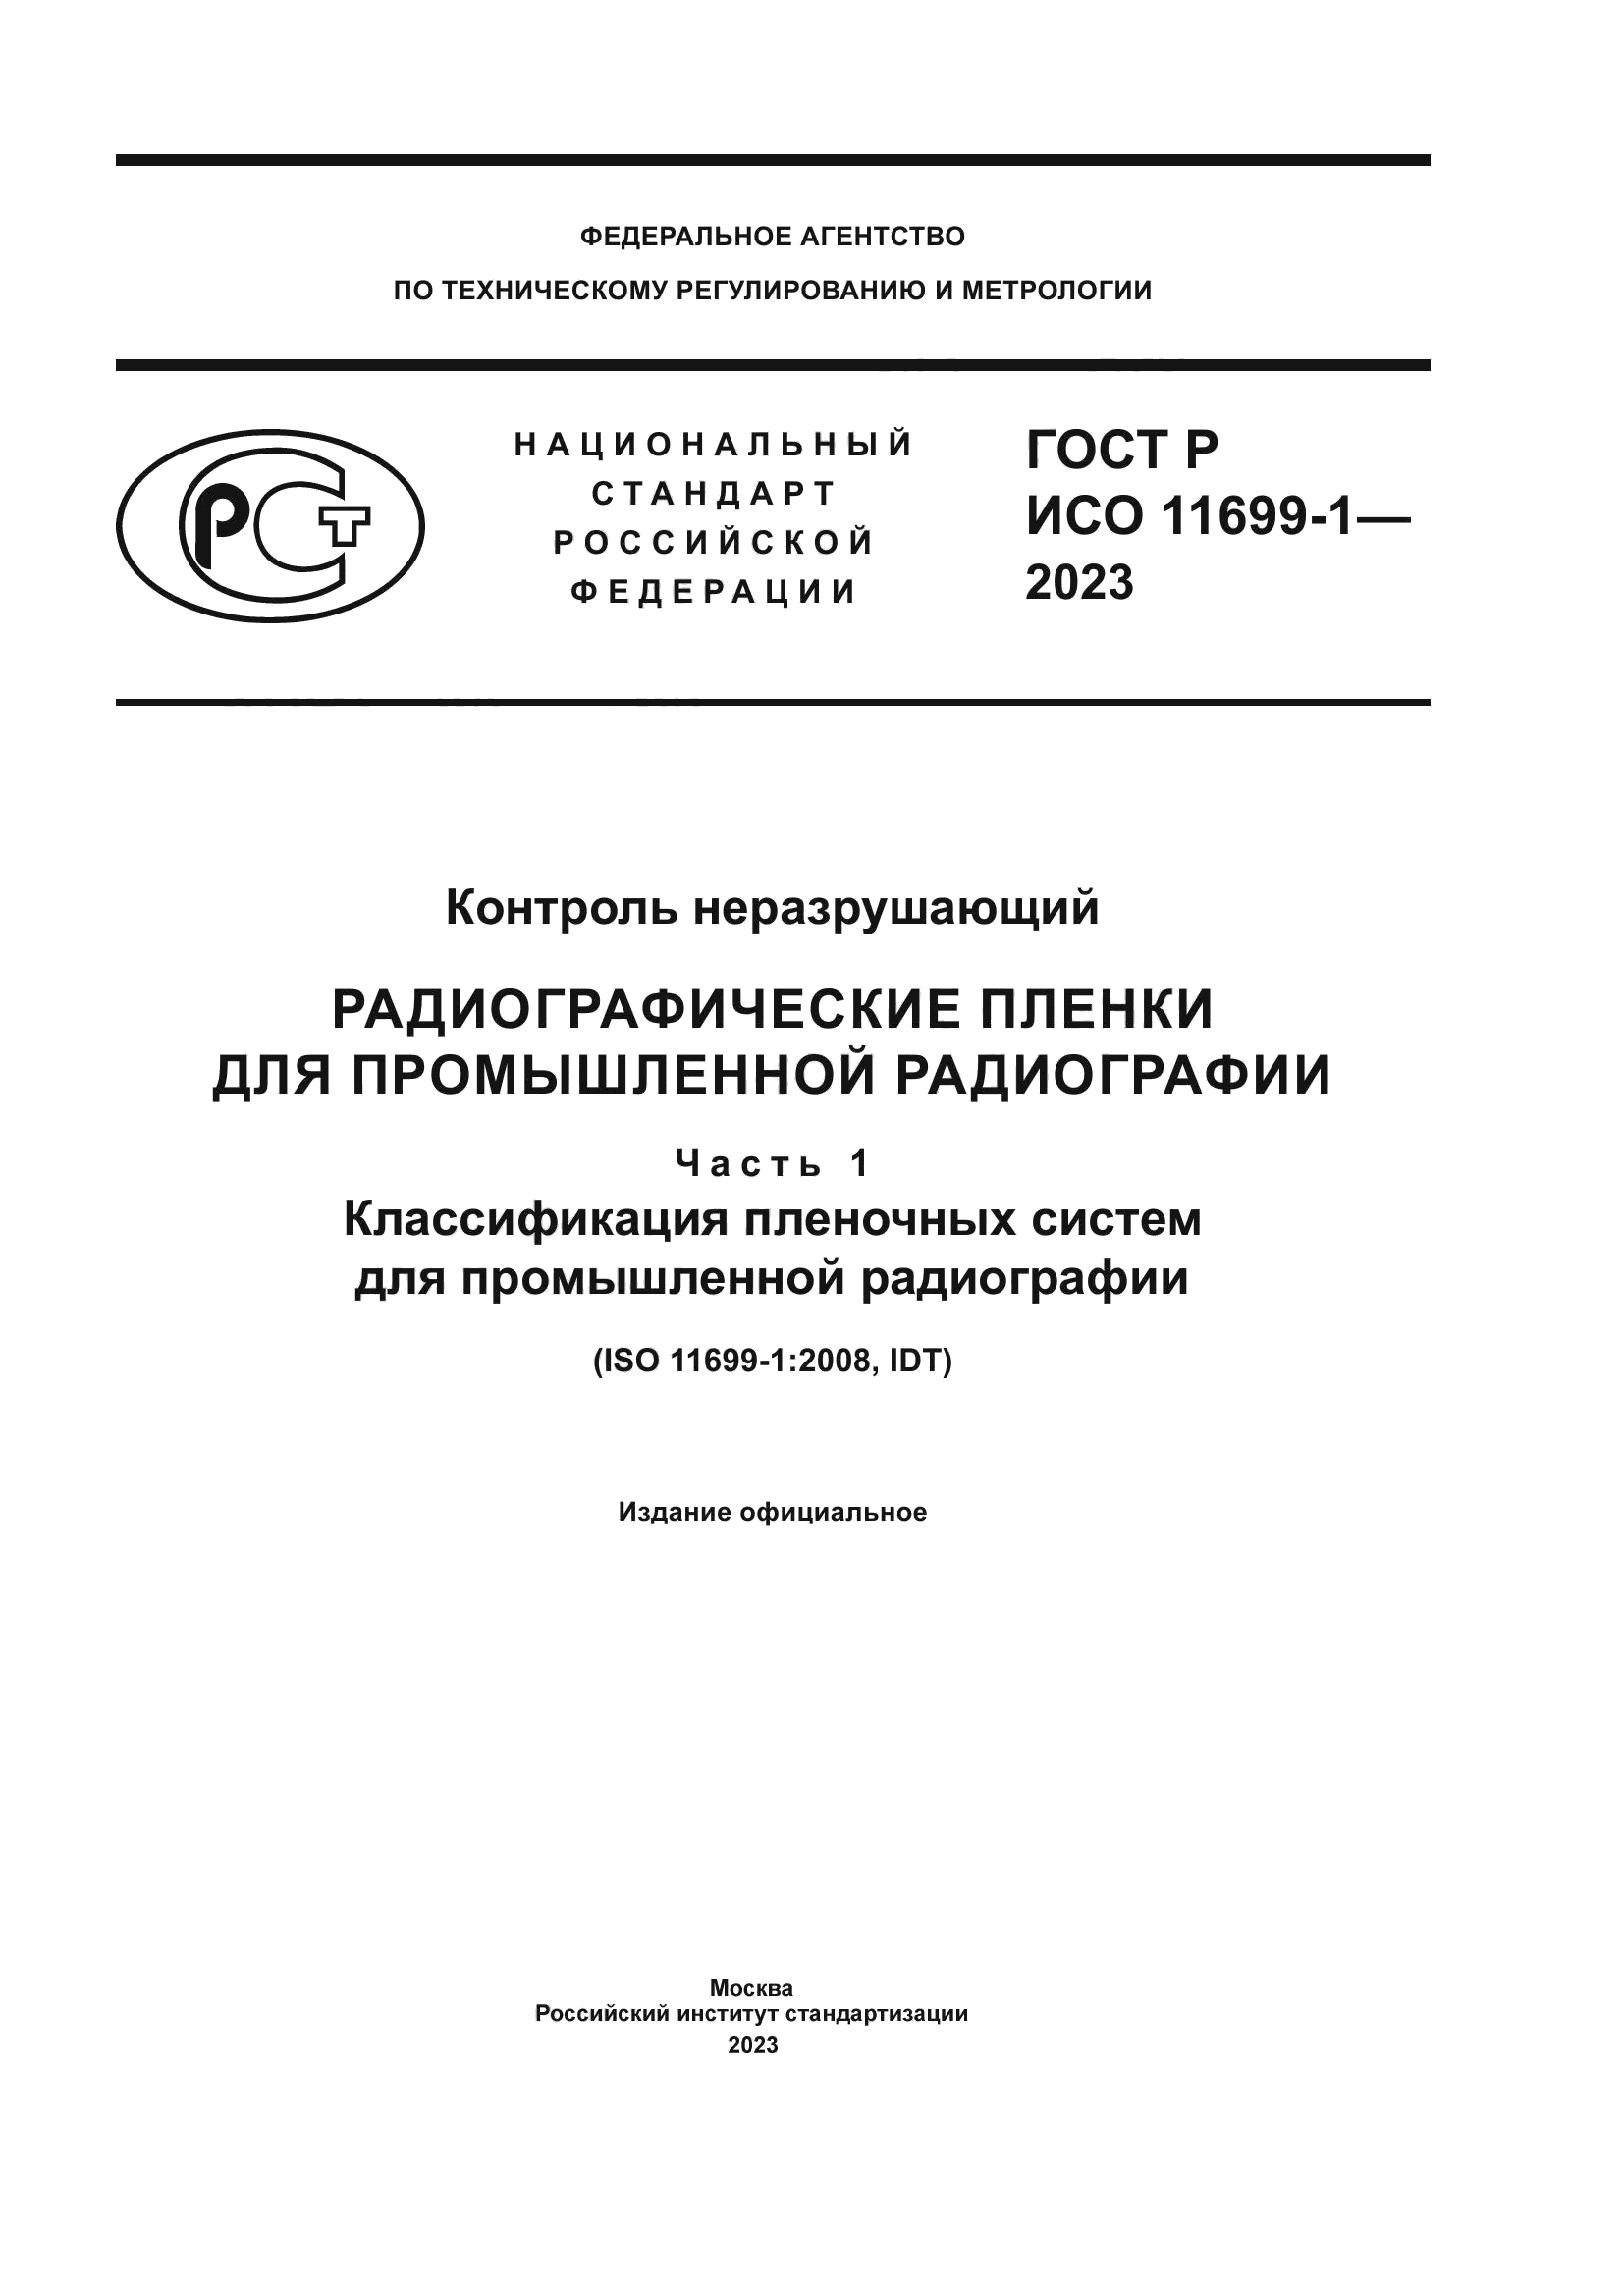 ГОСТ Р ИСО 11699-1-2023